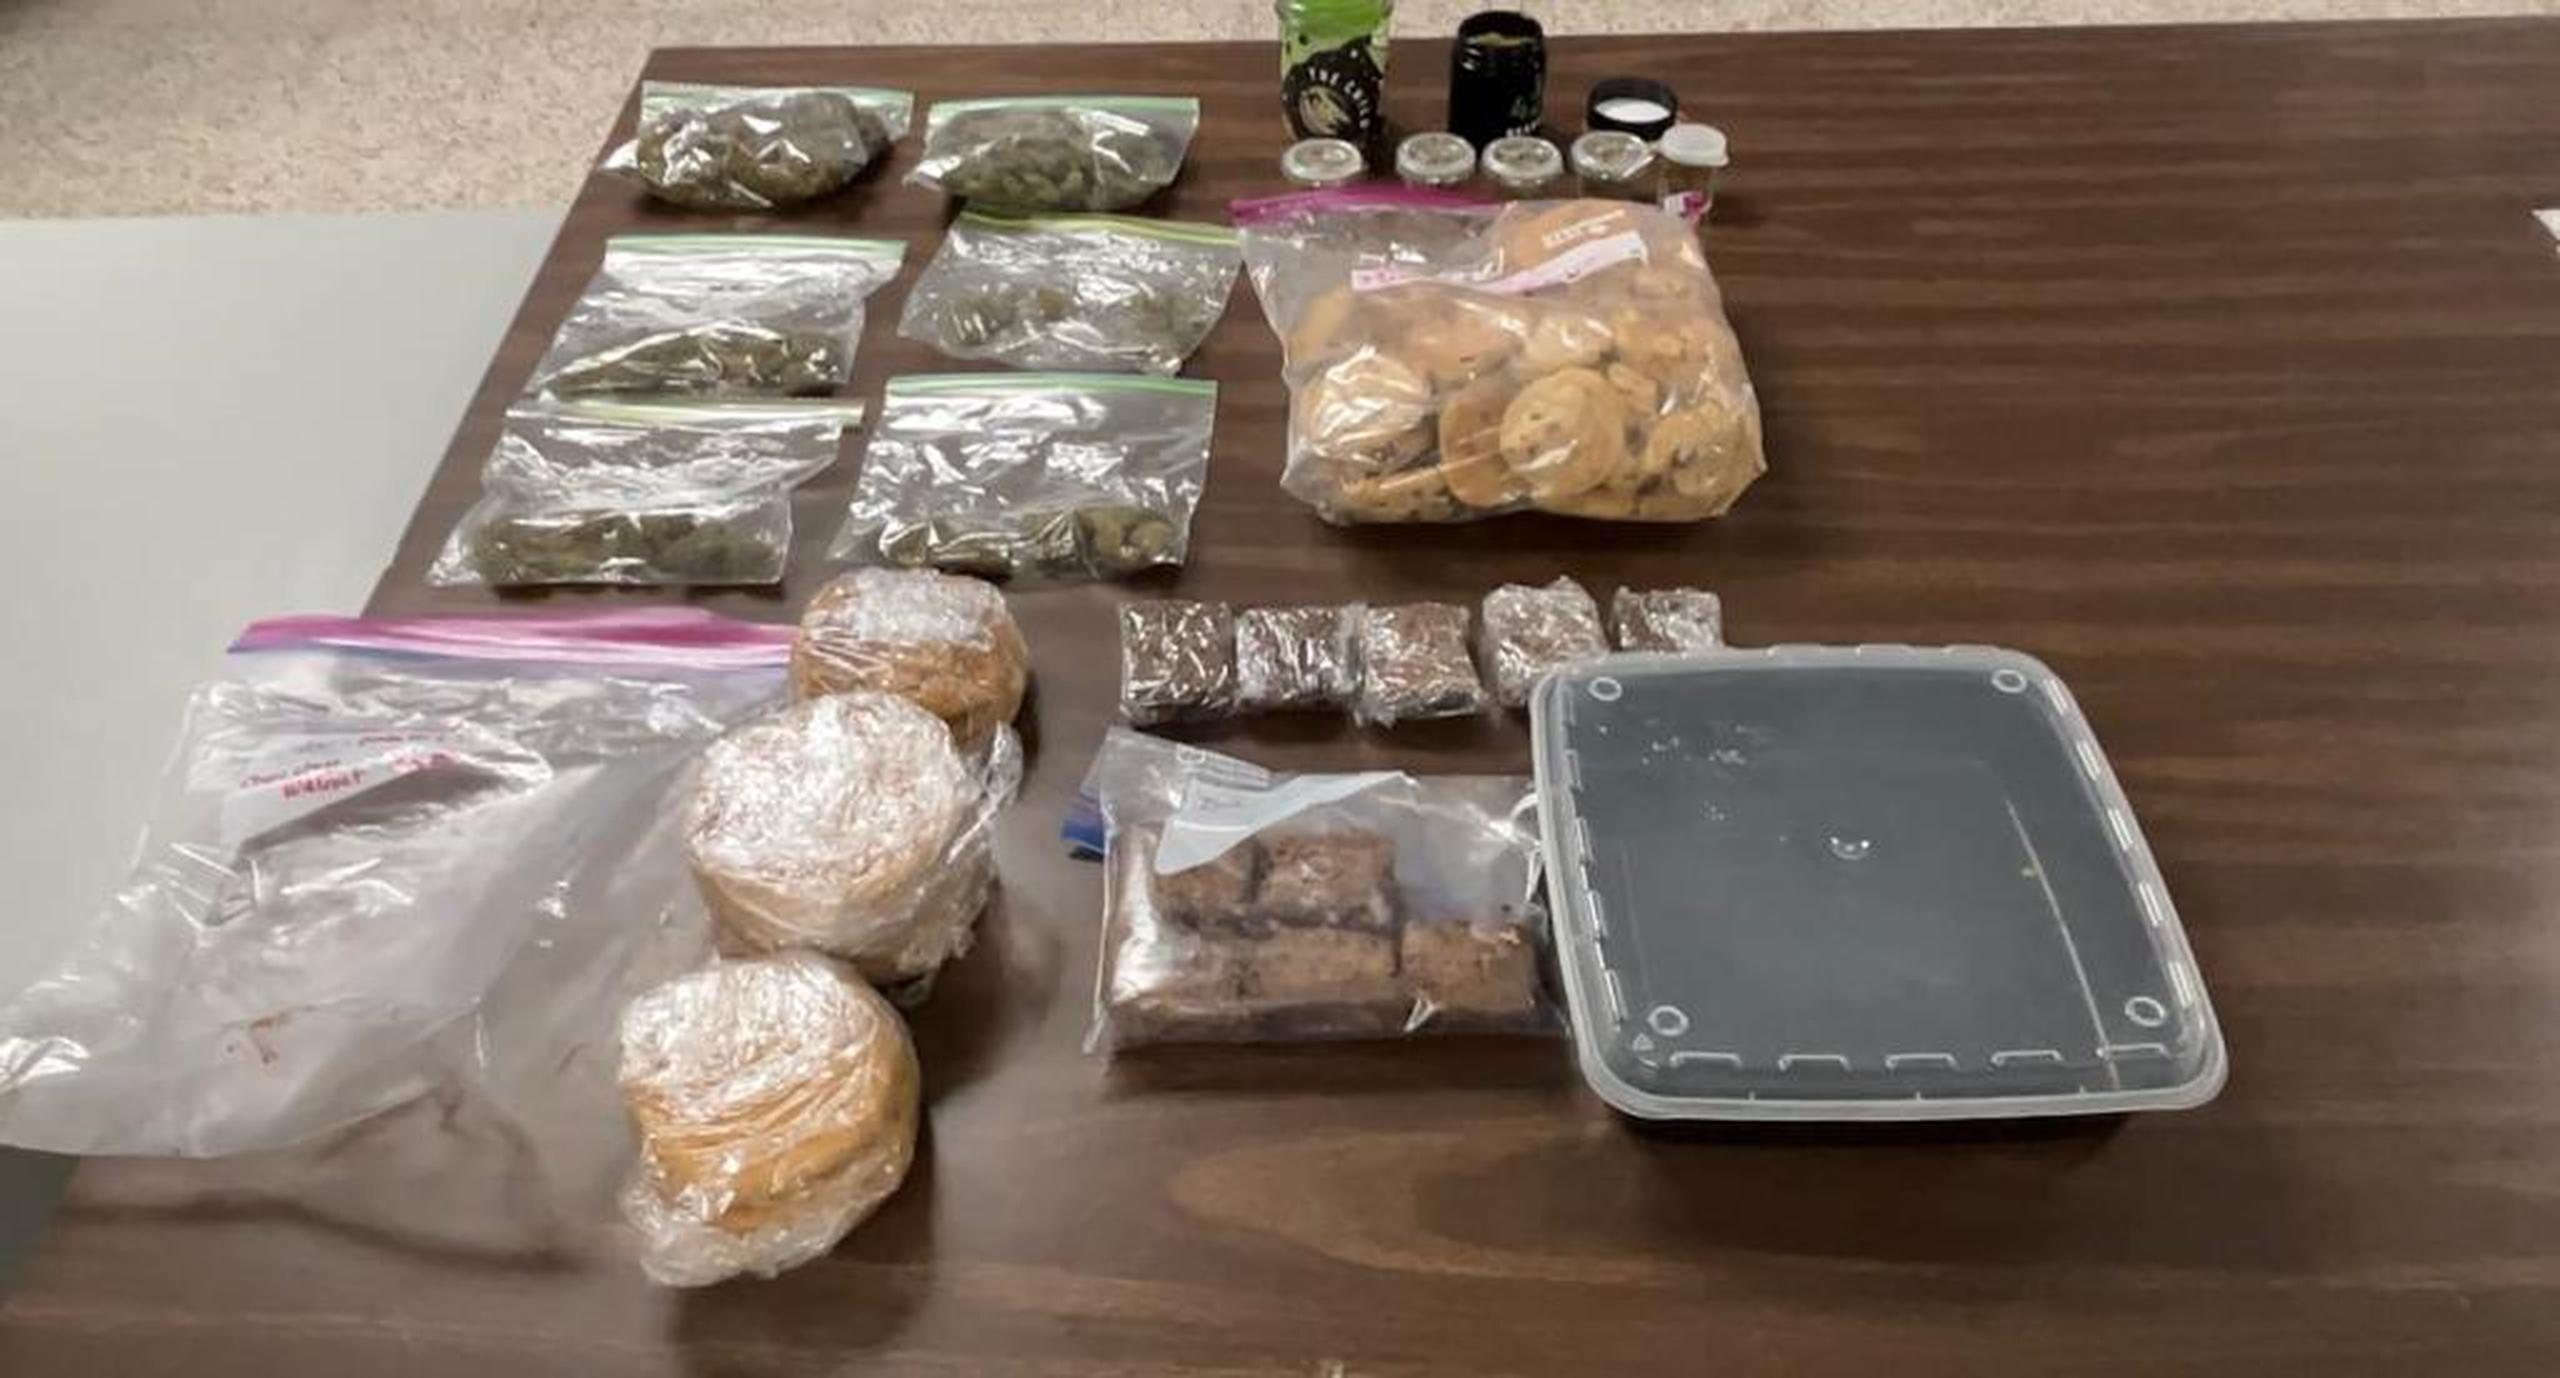 La División de Drogas Metropolitana ocupó marihuana y dulces confeccionados con la droga en un allanamiento en Puerto Nuevo.